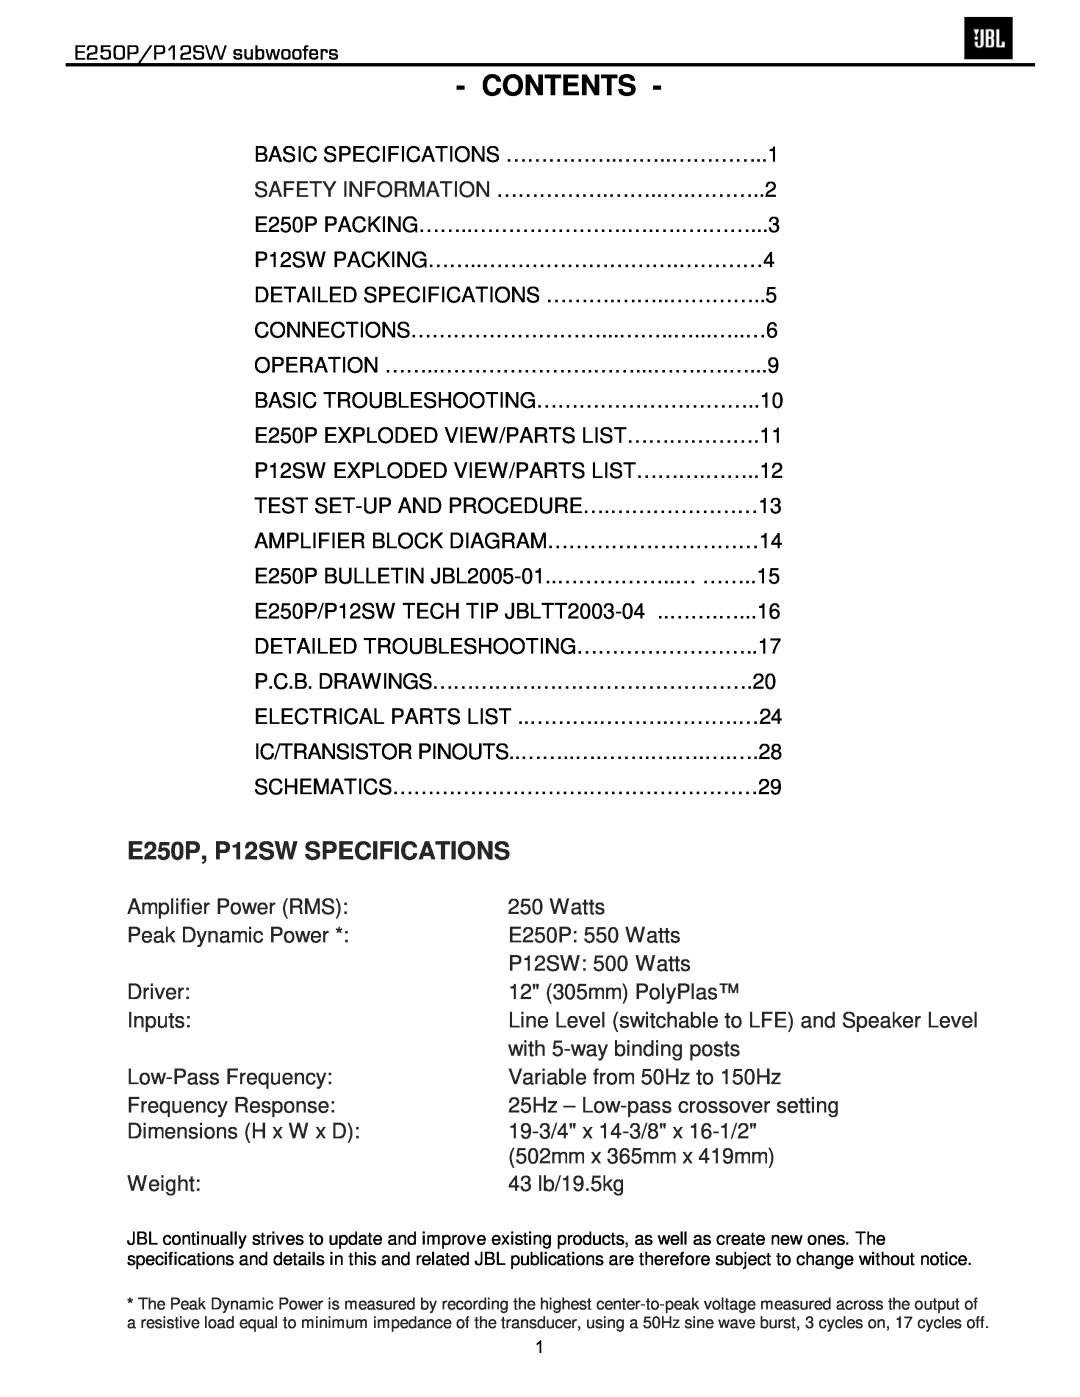 JBL service manual Contents, E250P/P12SW subwoofers, E250P, P12SW SPECIFICATIONS 